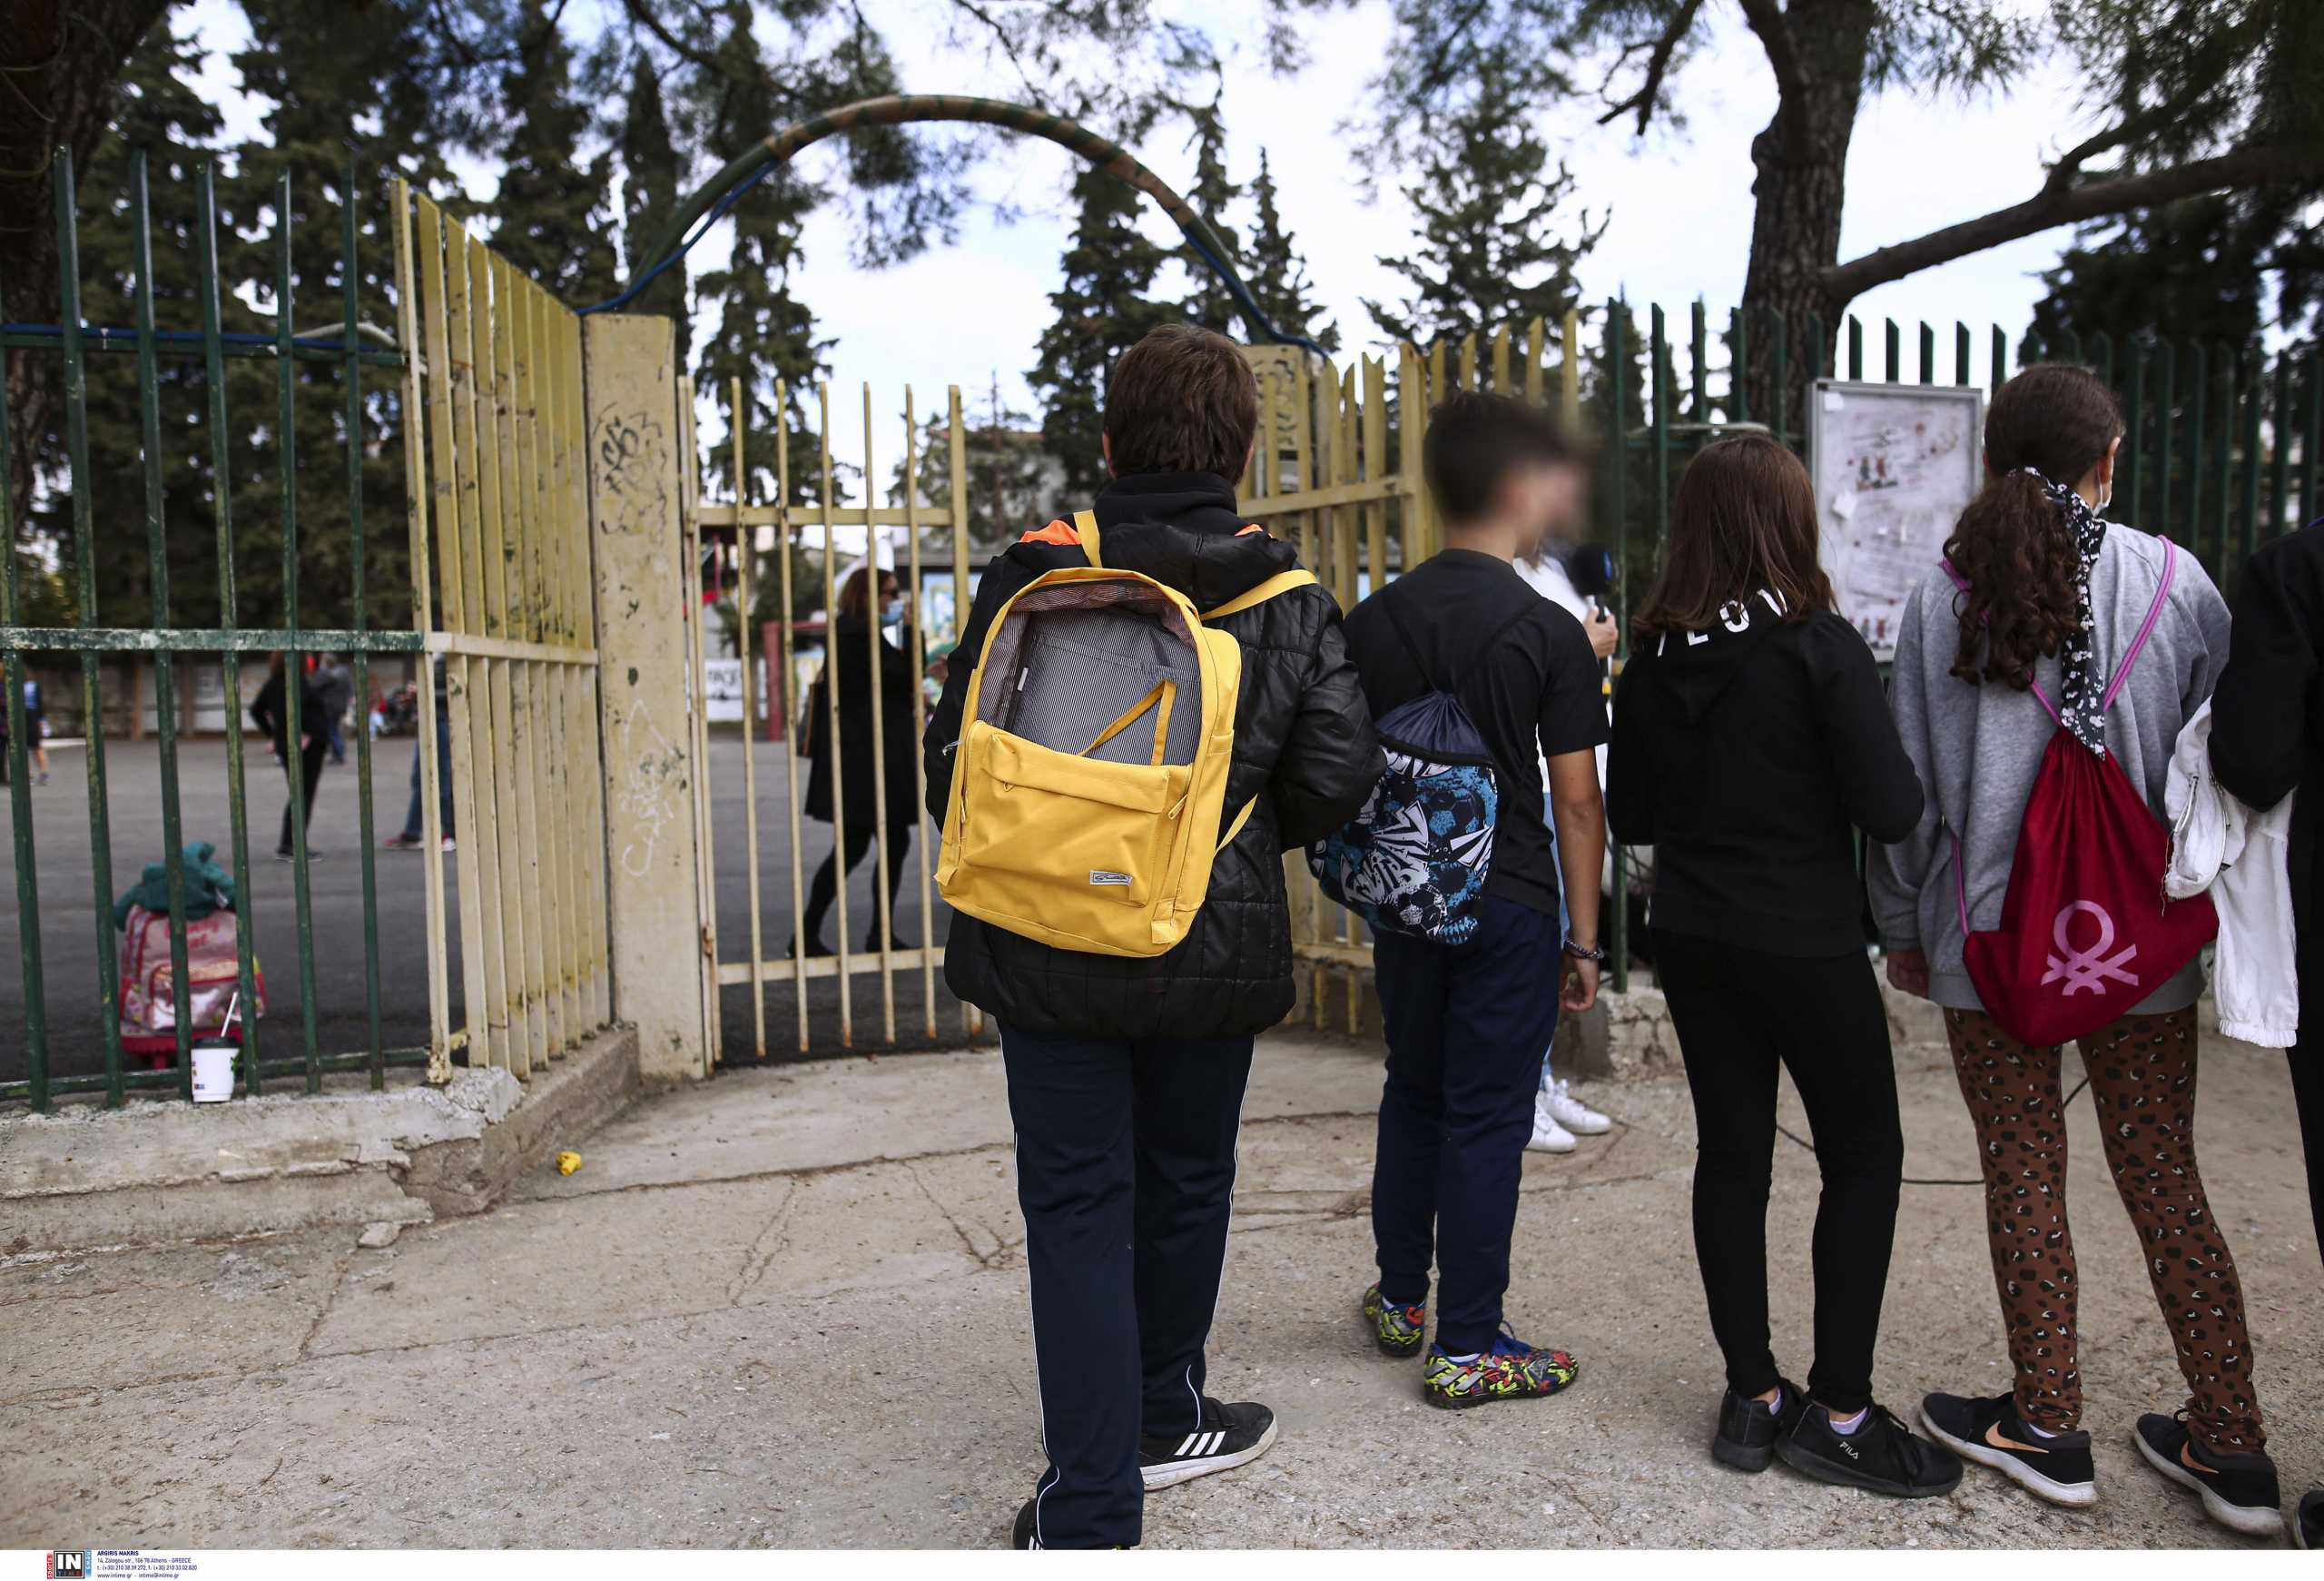 Σπέτσες – Κορονοϊός: Κλειστά όλα τα σχολεία την Παρασκευή 21/01 με απόφαση του δημάρχου